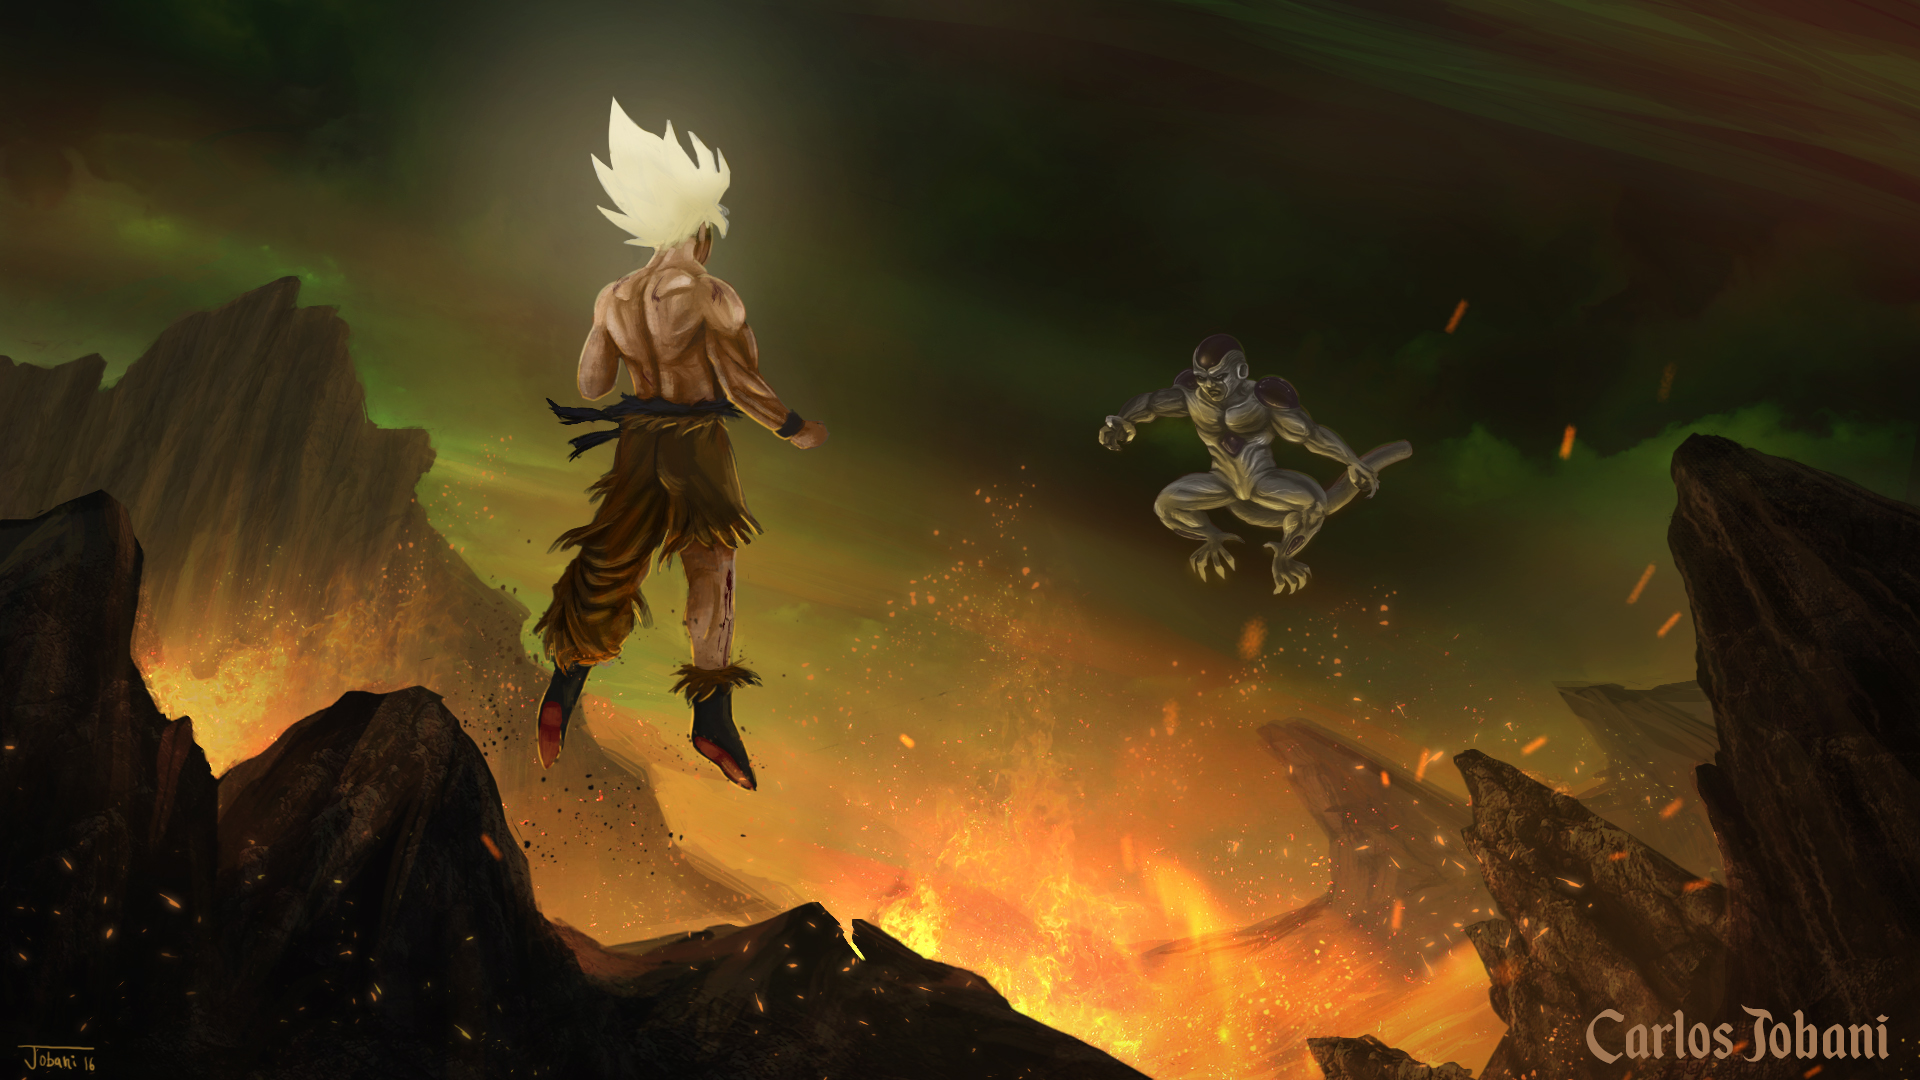 Goku vs Freeza by Valdenir9807 on DeviantArt